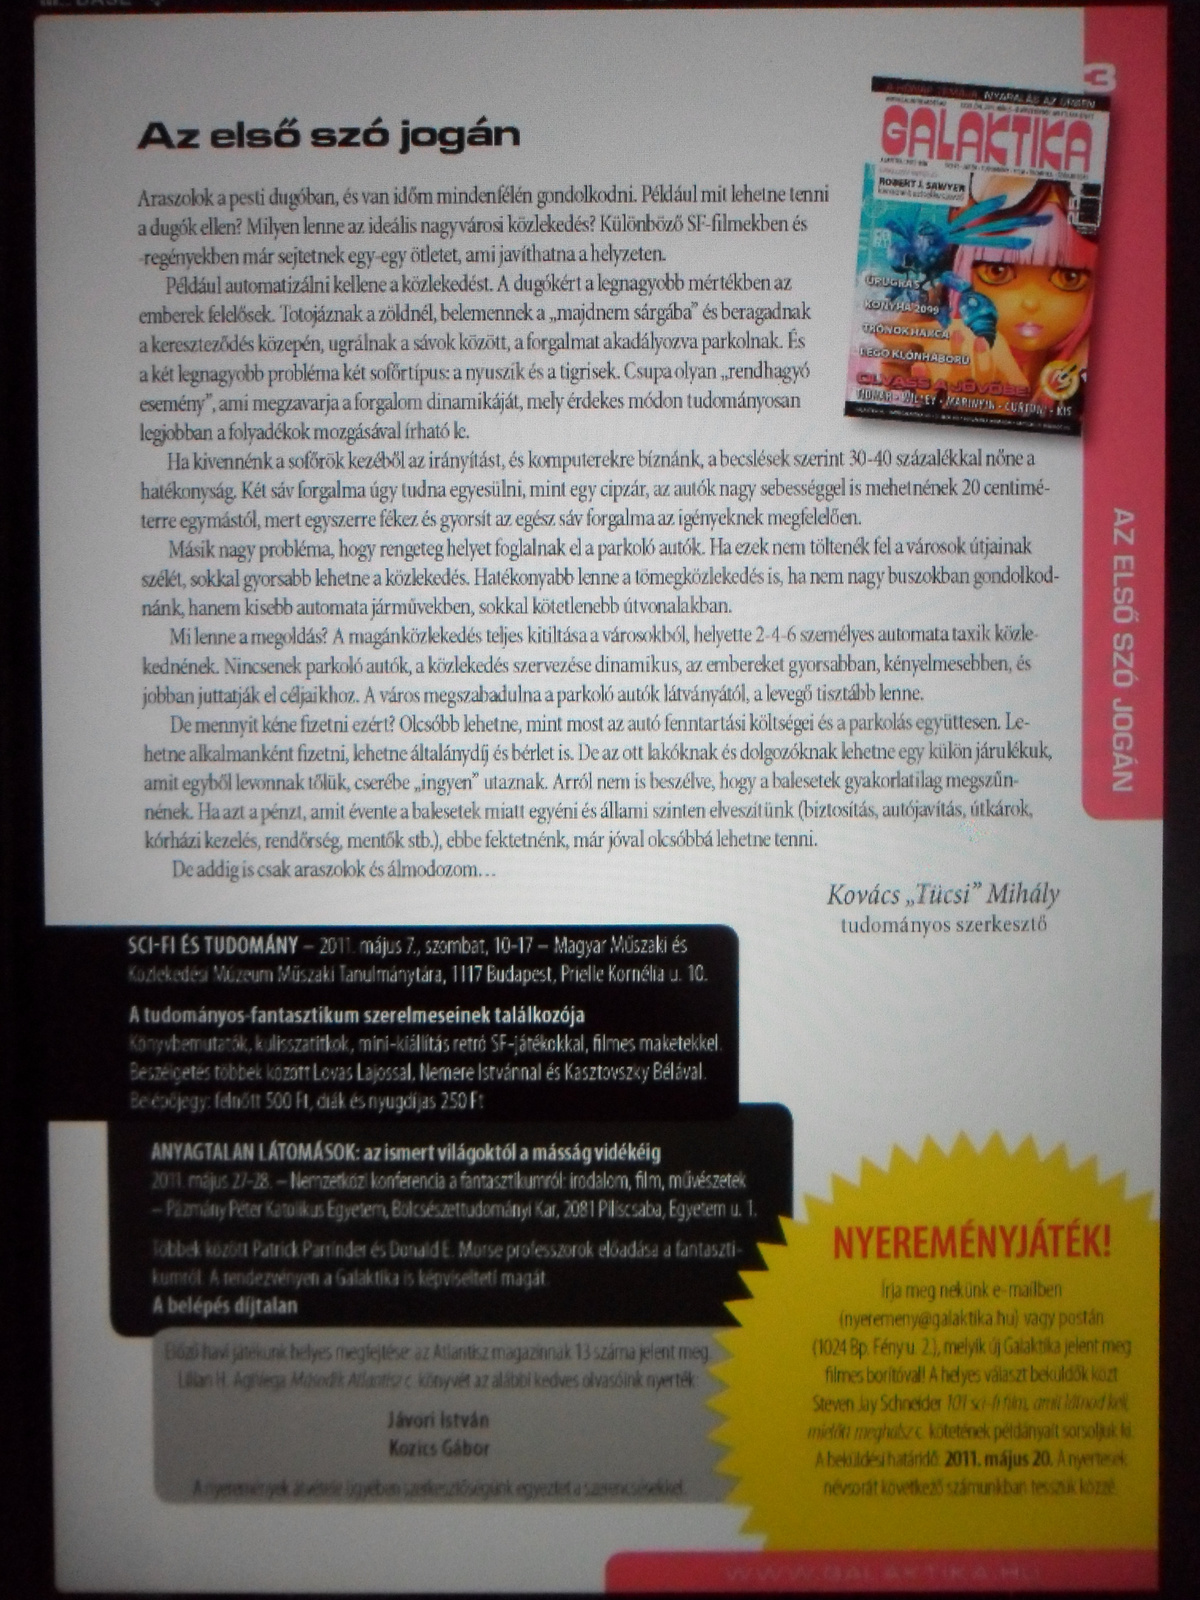 iPad DiMag Galaktika Magazin 023